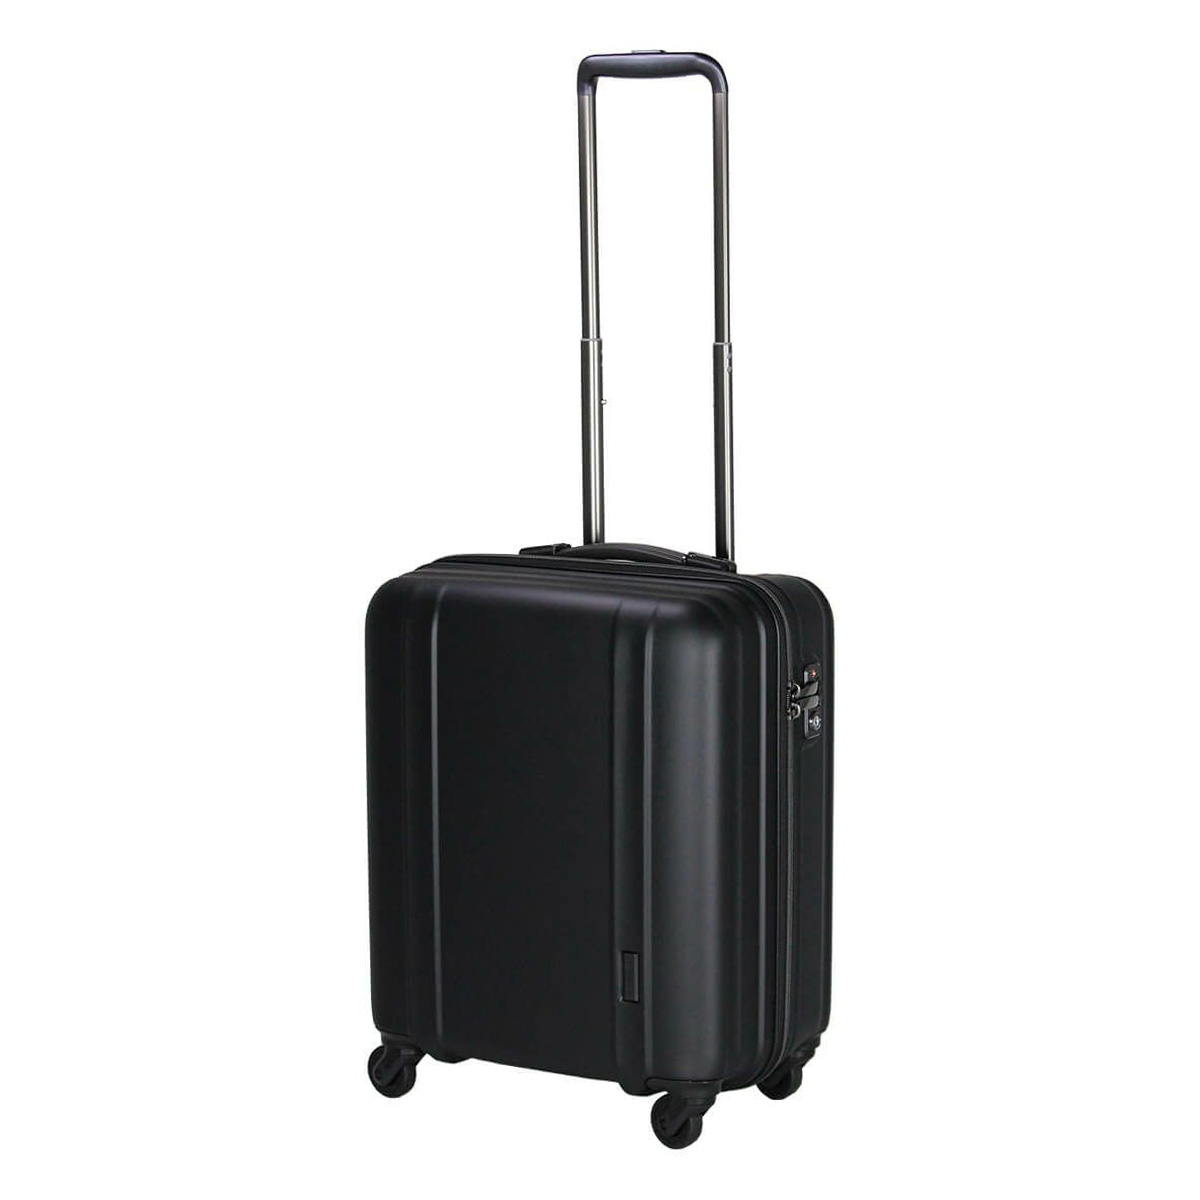 シフレゼログラ（旅行用品 機内持込み可能ハードスーツケース）の商品